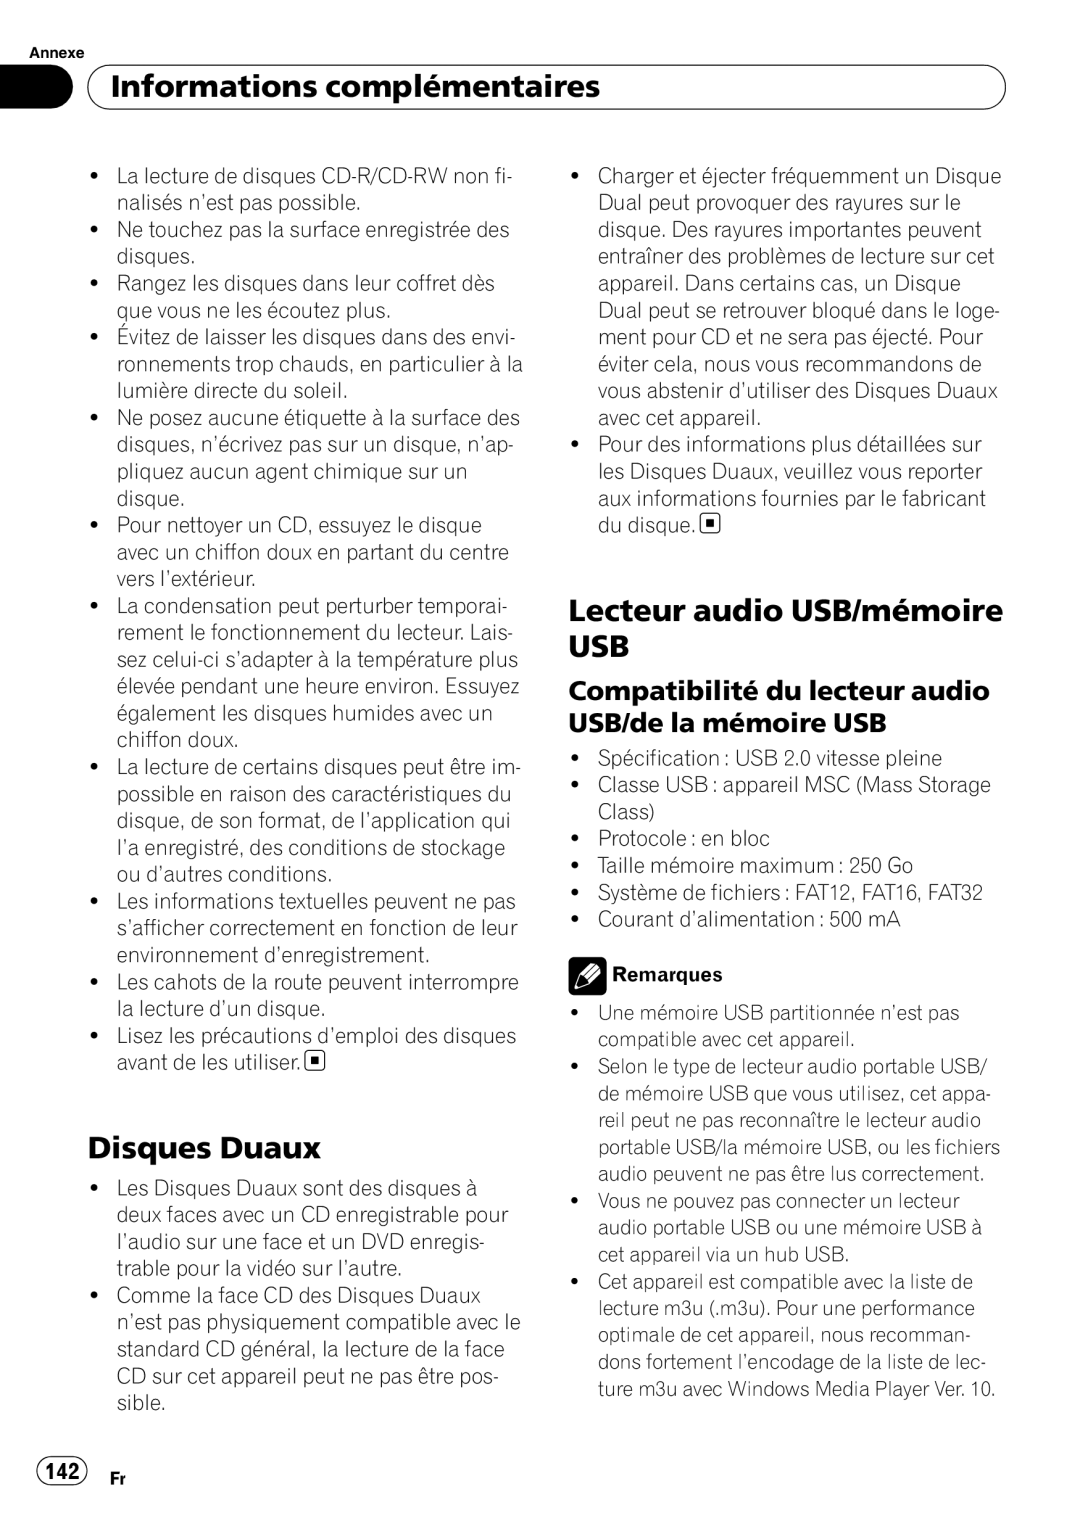 Pioneer DEH-P690UB operation manual Disques Duaux, Lecteur audio USB/mémoire USB, 142 Fr, Informations complémentaires 